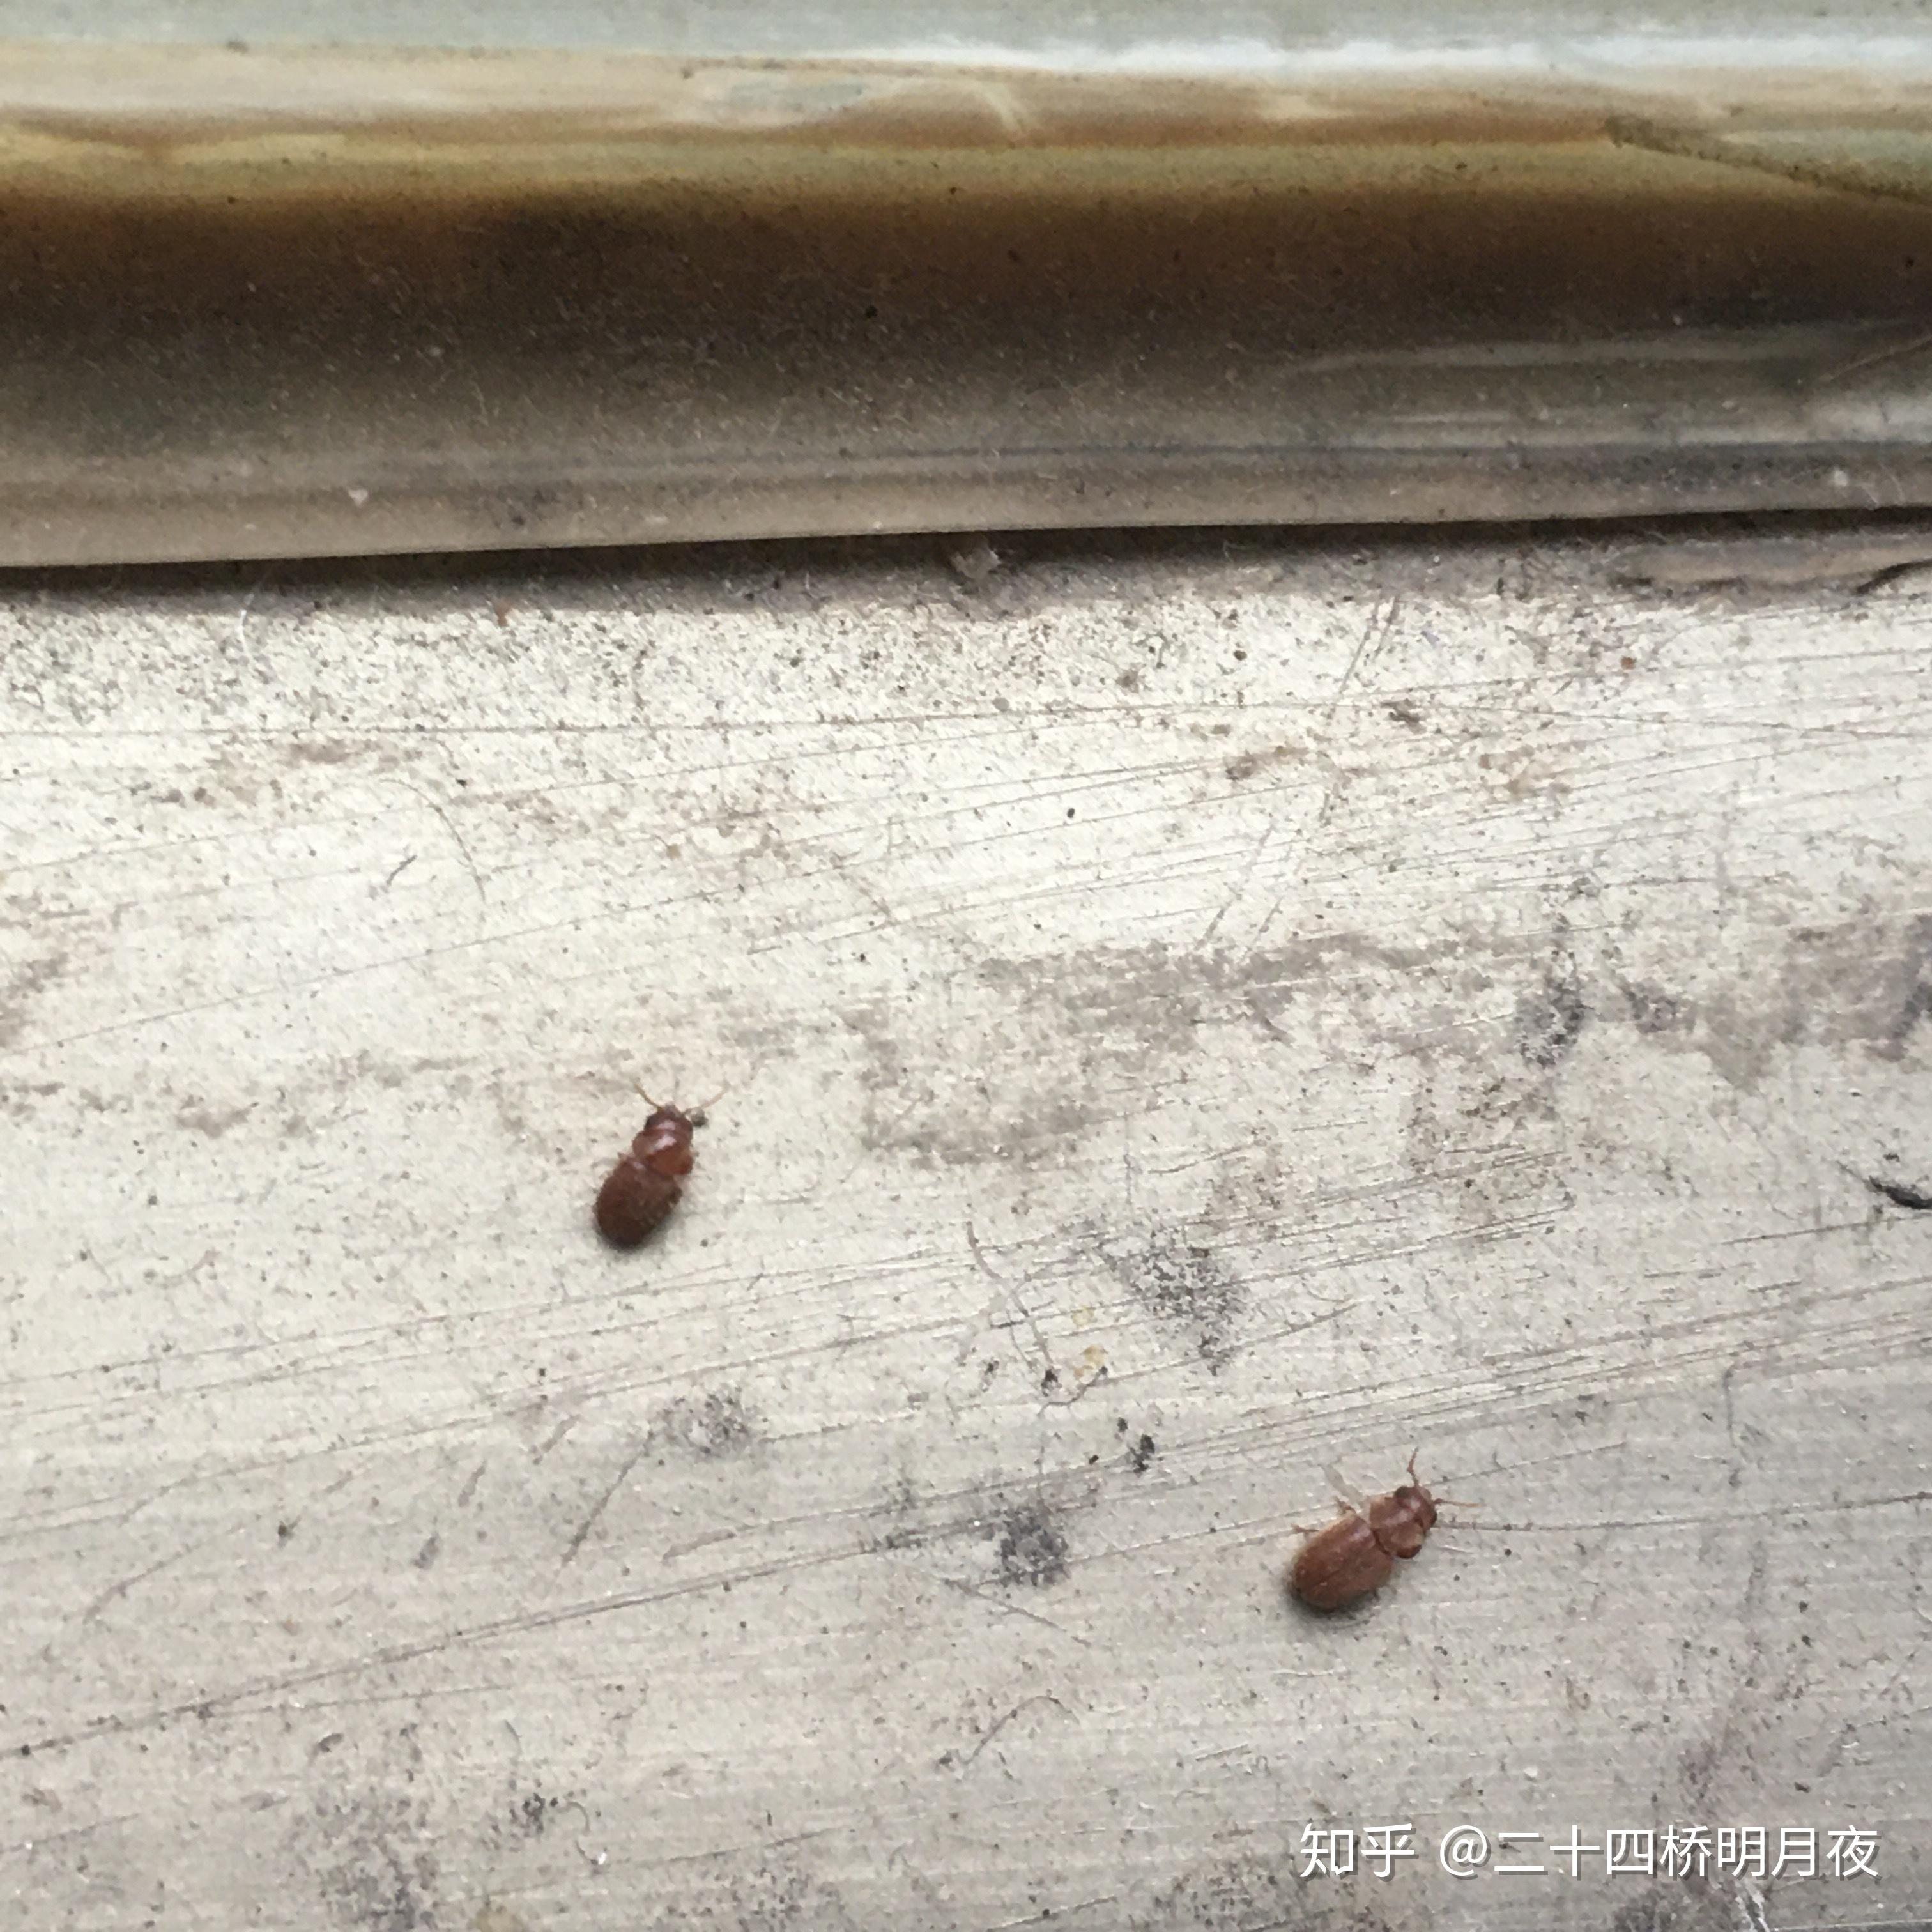 大家帮我看看这是蟑螂幼虫吗最近家里发现了几次